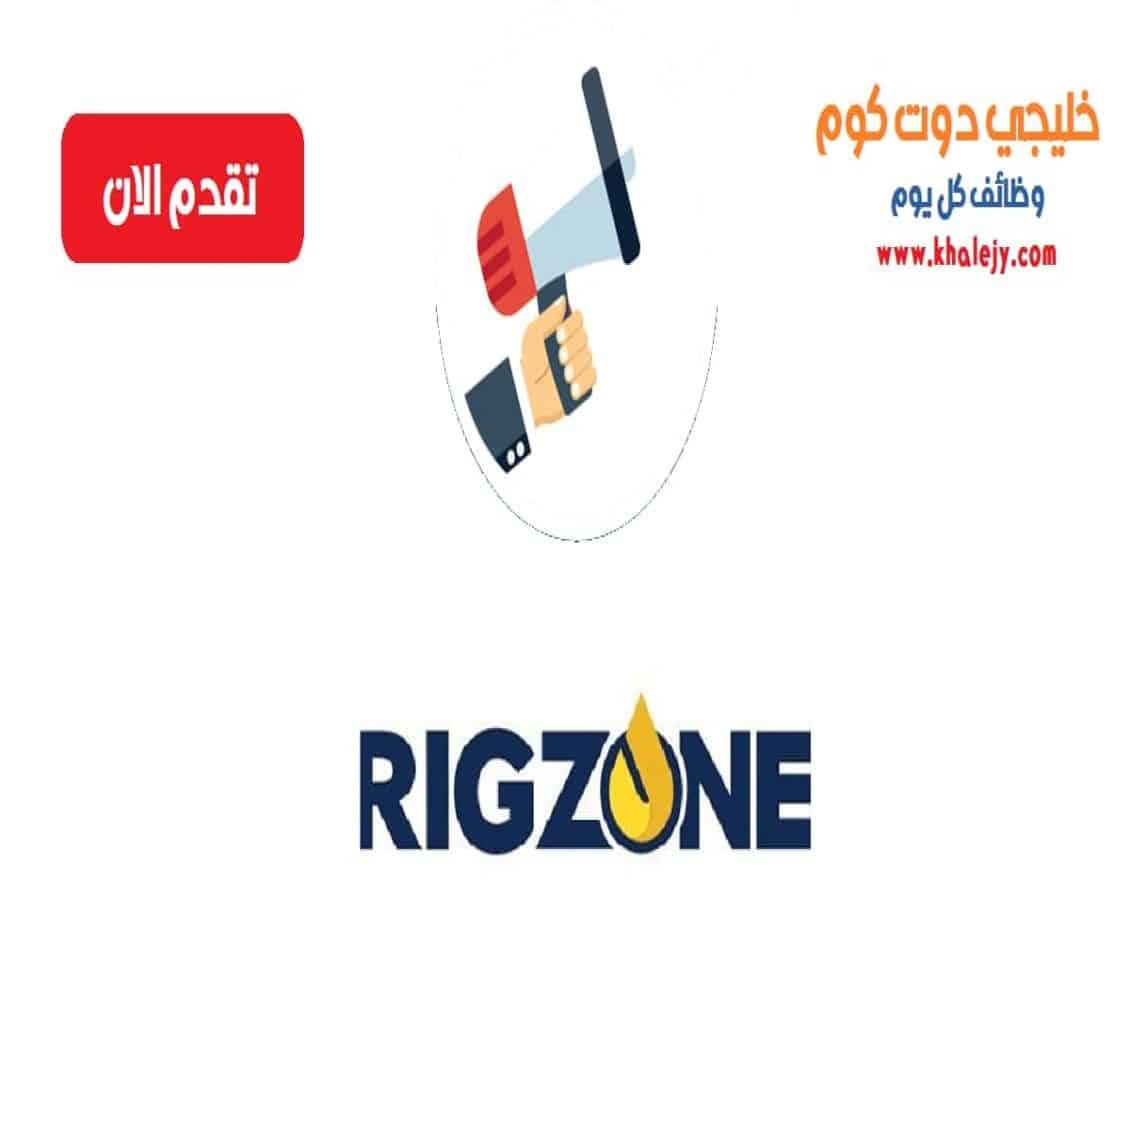 وظائف شركة ريجزون للبترول في الكويت